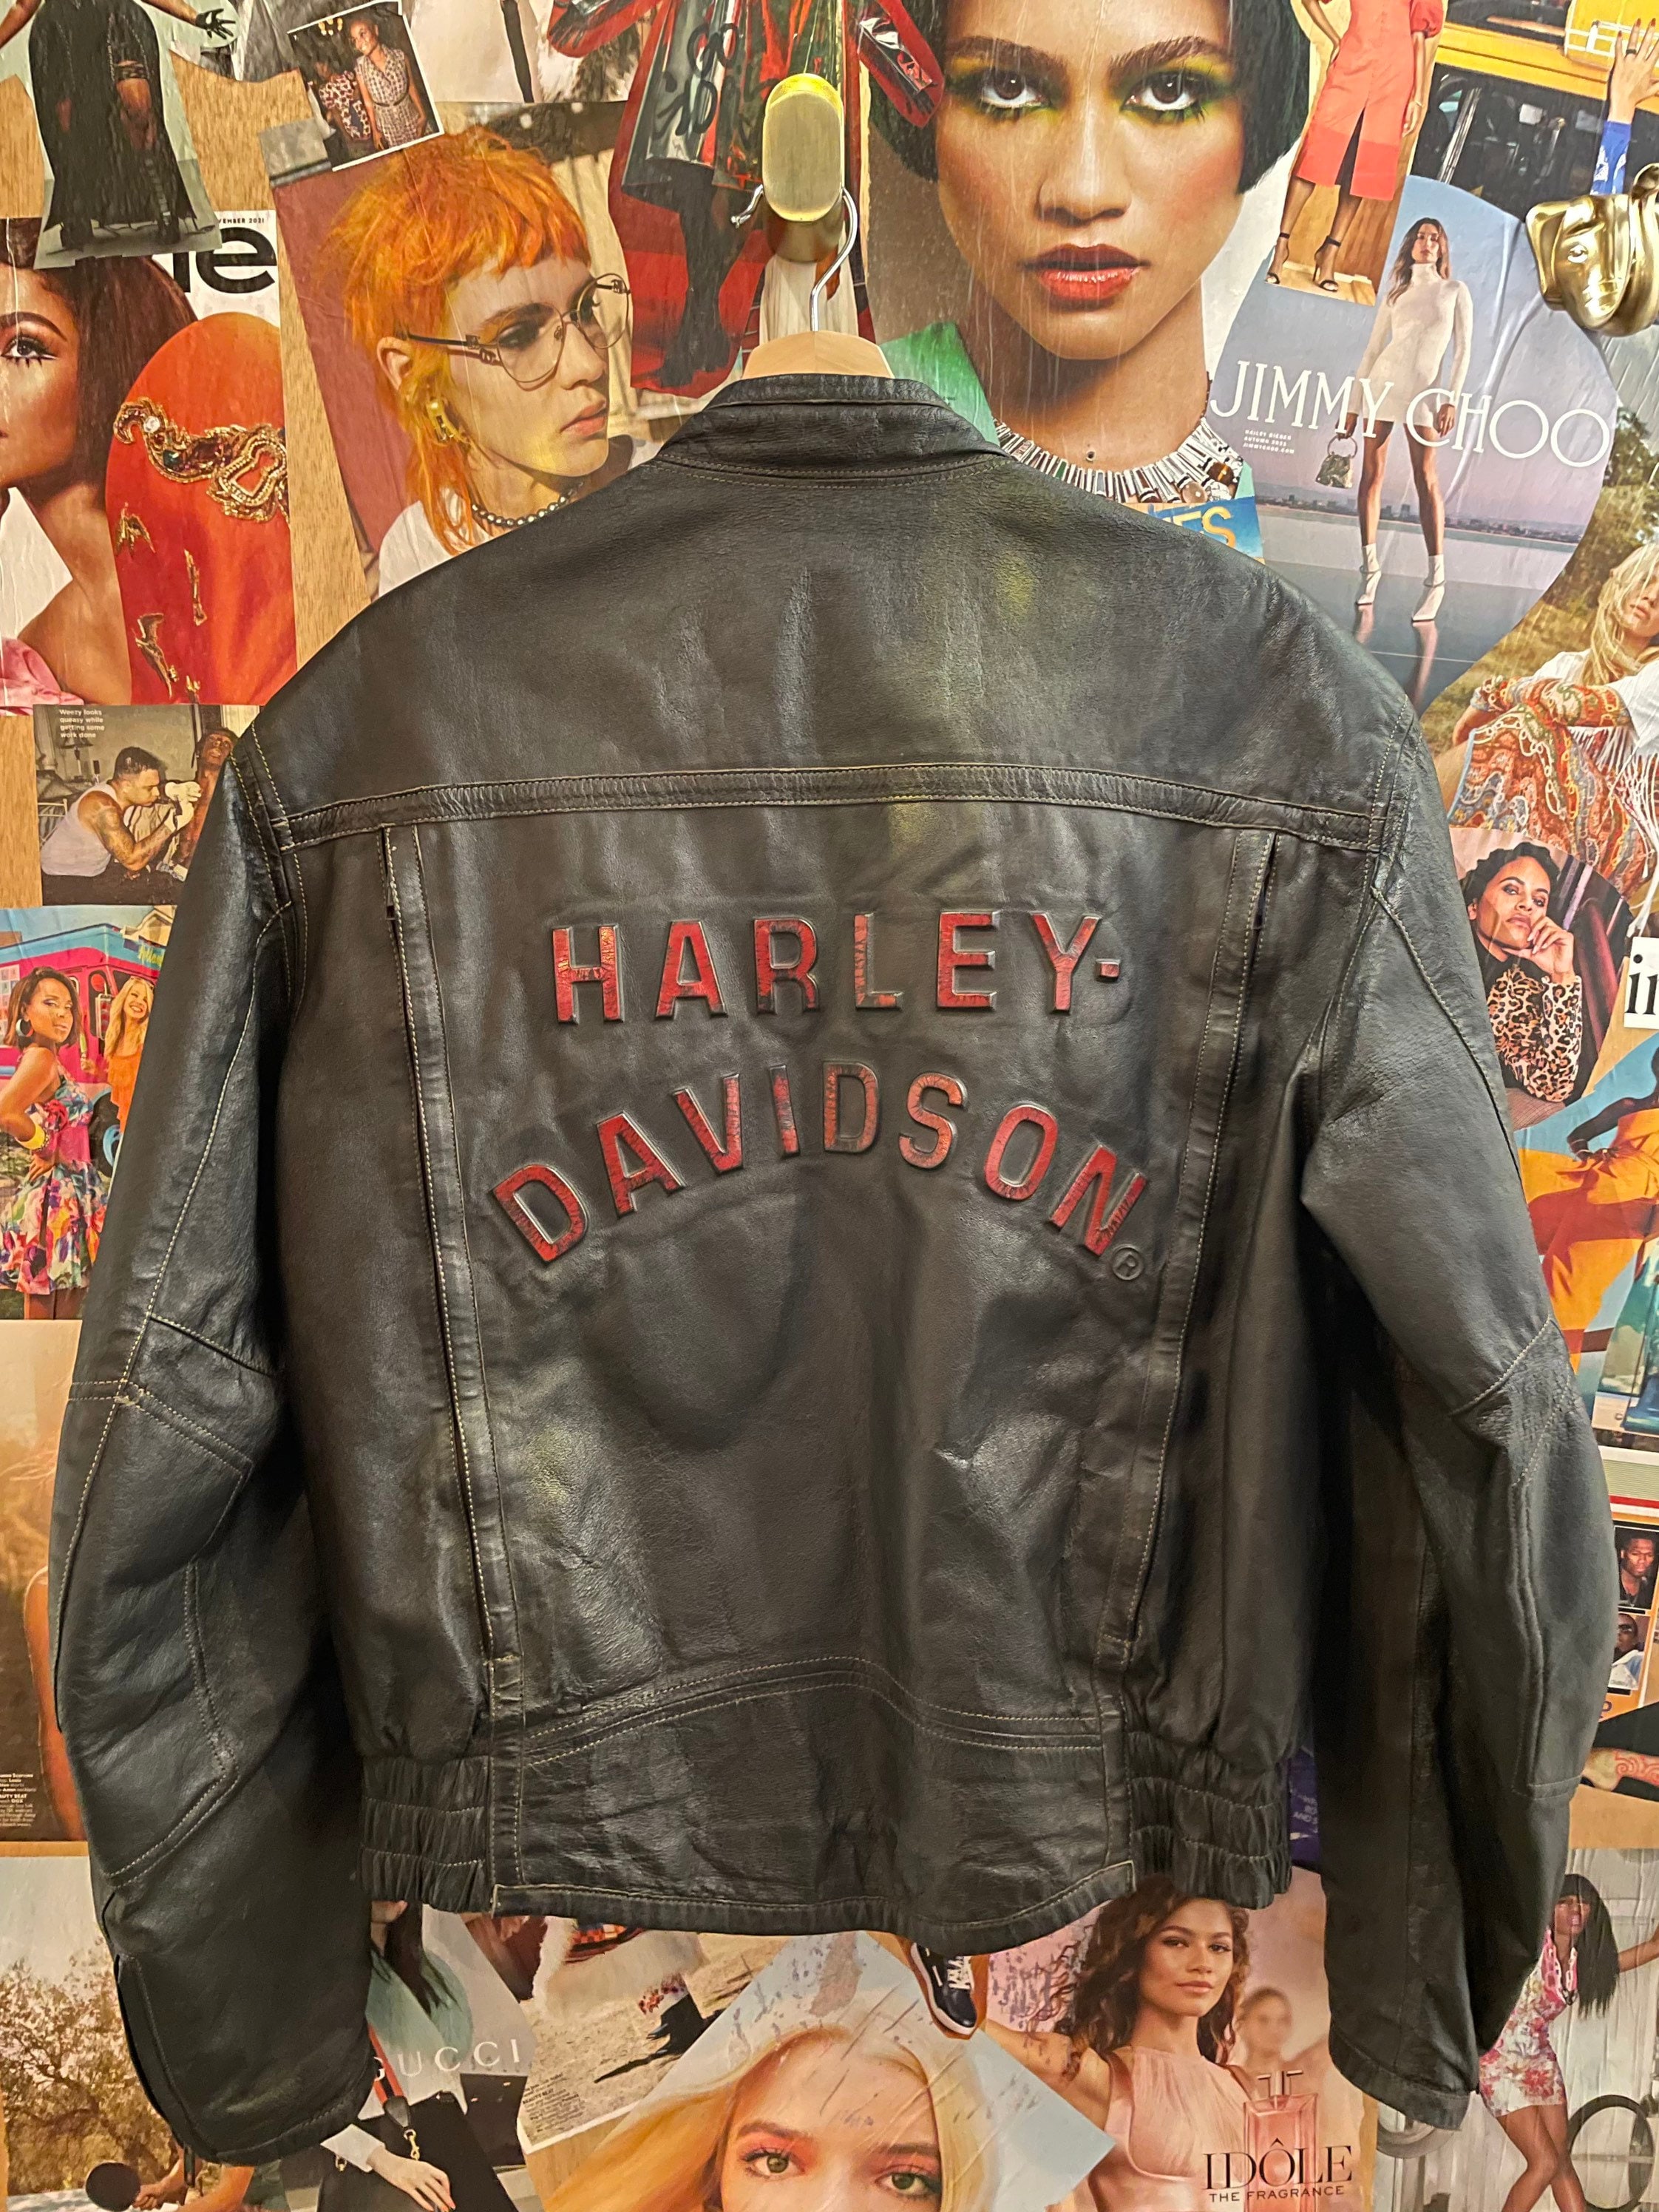 A Vintage Leather Harley-Davidson Women’s Jacket blog.knak.jp